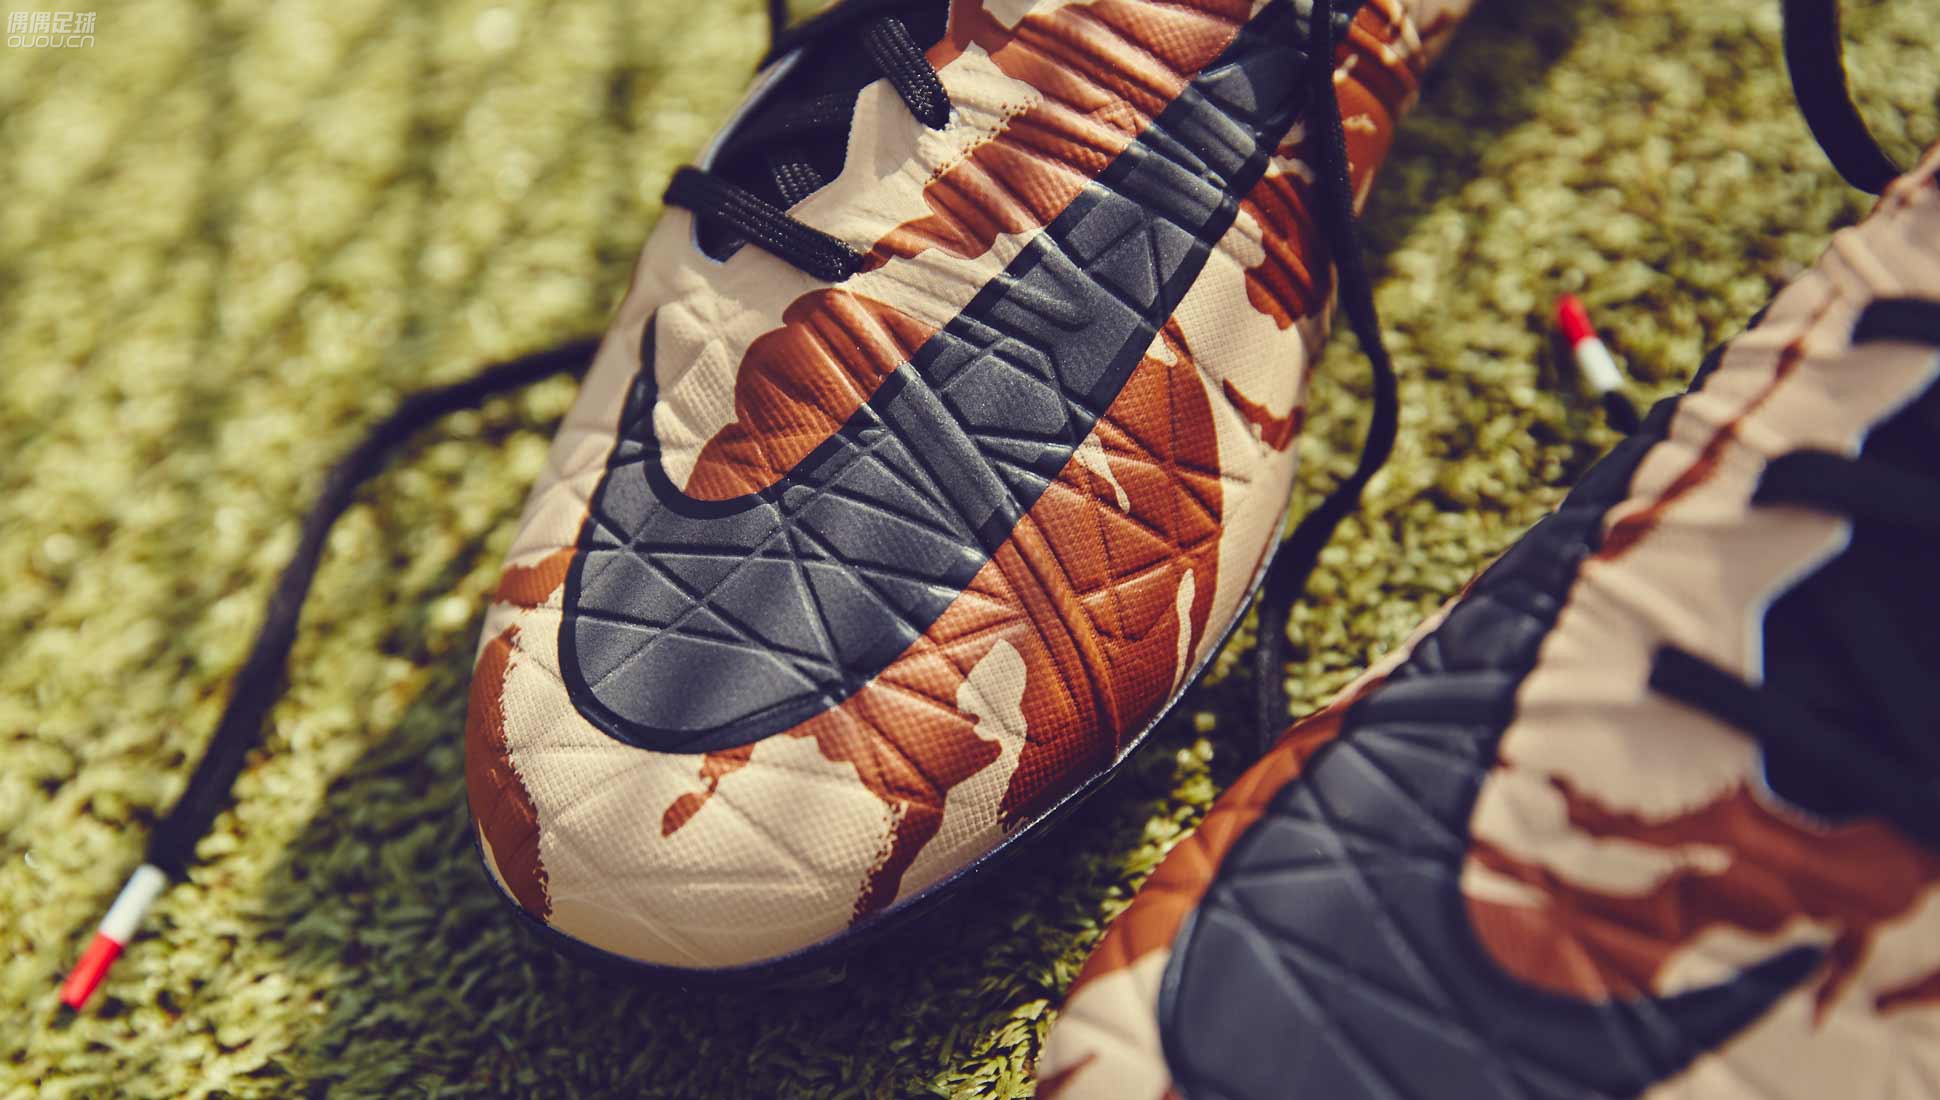 迷彩涂装下的耐克足球鞋欣赏:Nike Camo Pac